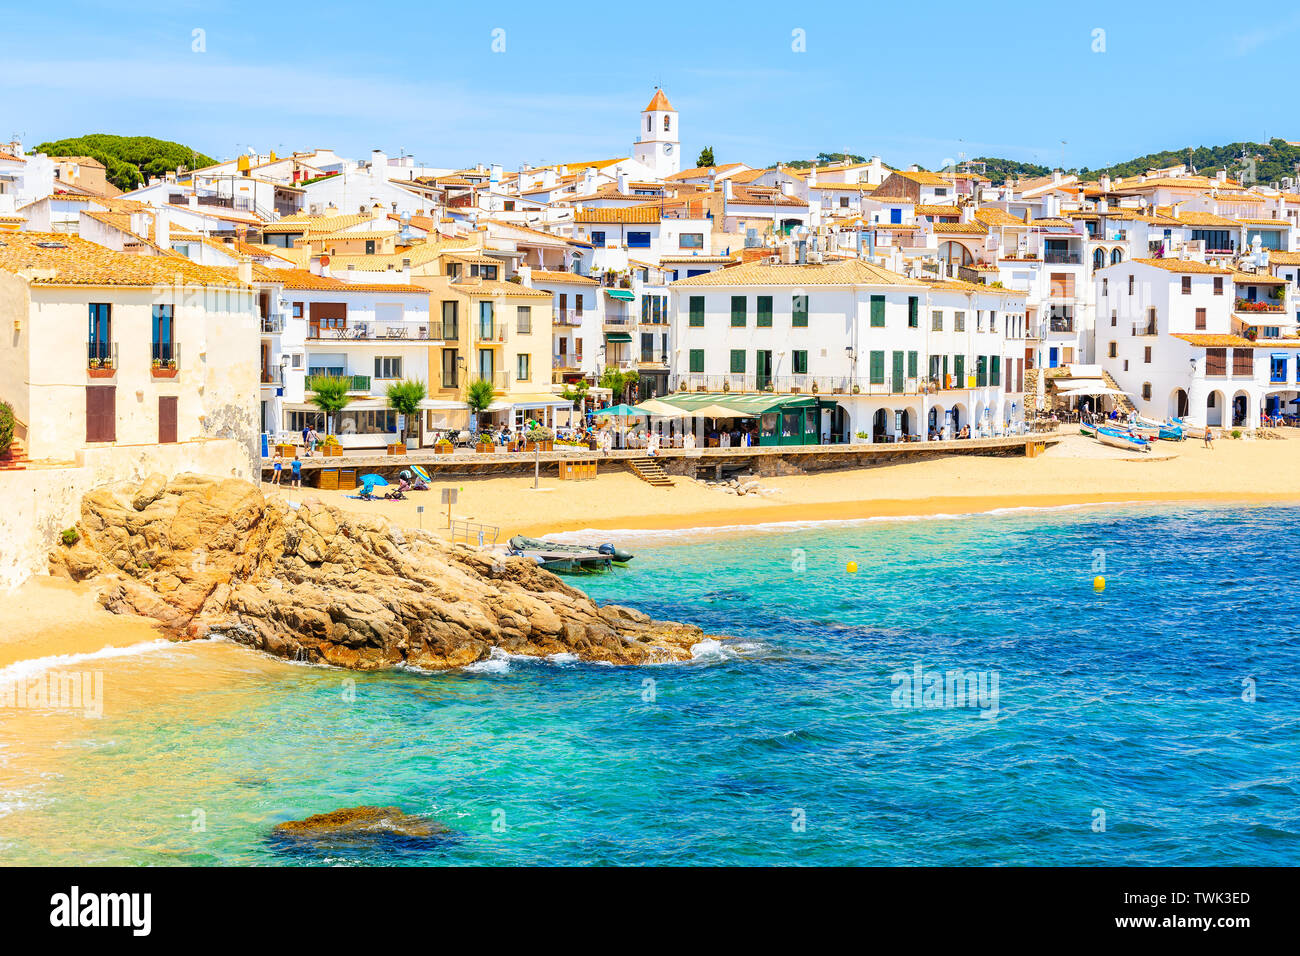 Bellissima spiaggia di Calella de Palafrugell, scenic villaggio di pescatori con case bianche e la spiaggia di sabbia chiara con acqua blu in Costa Brava Catalogna Foto Stock